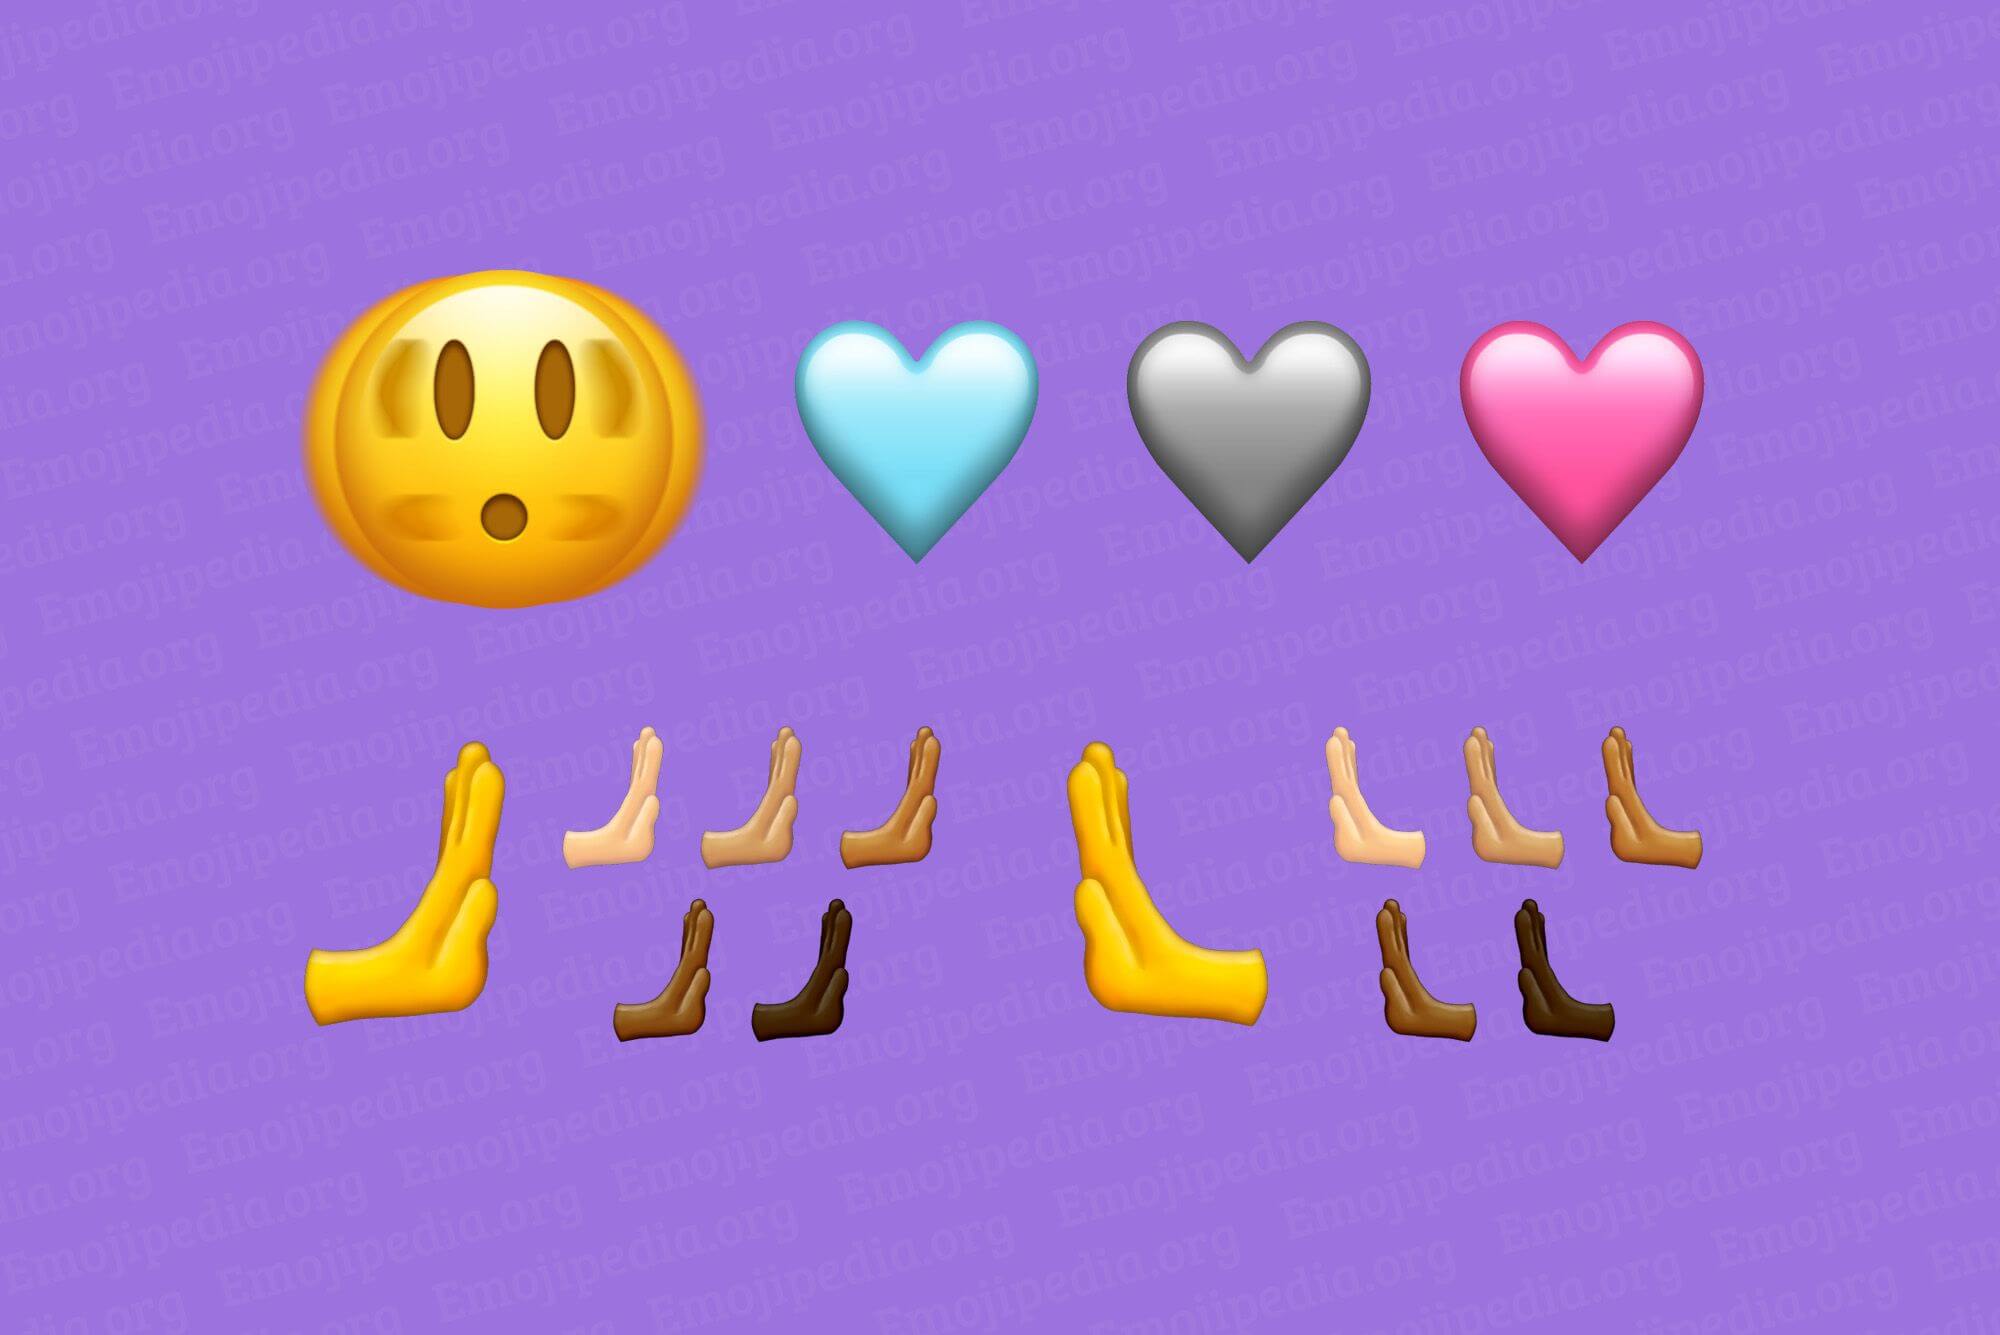 WhatsApp: Se vienen nuevos emojis en 2023